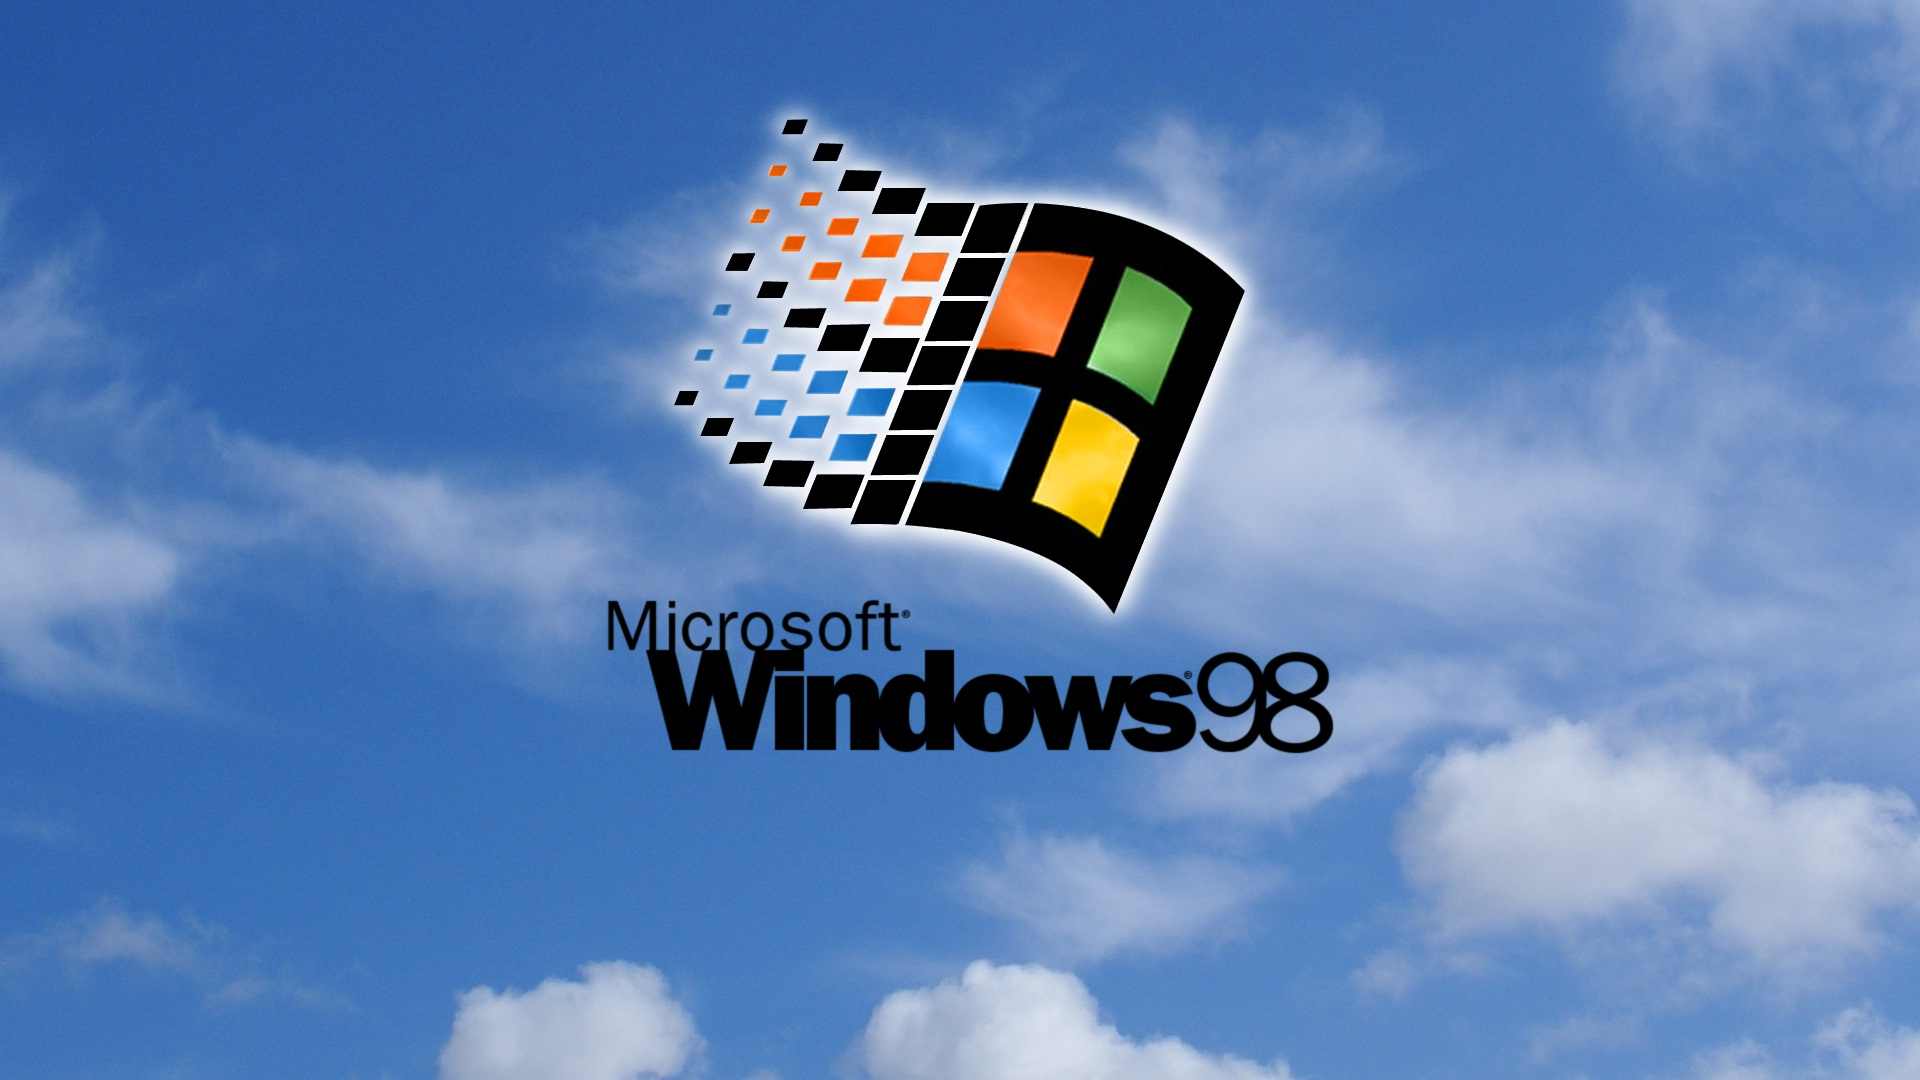 Những hình nền Windows 98 thời hội chợ phần mềm với độ phân giải thấp đầy gợi nhớ. Không để bỏ lỡ những ký ức thời xưa này, nhấp chuột để xem ngay hình nền Windows